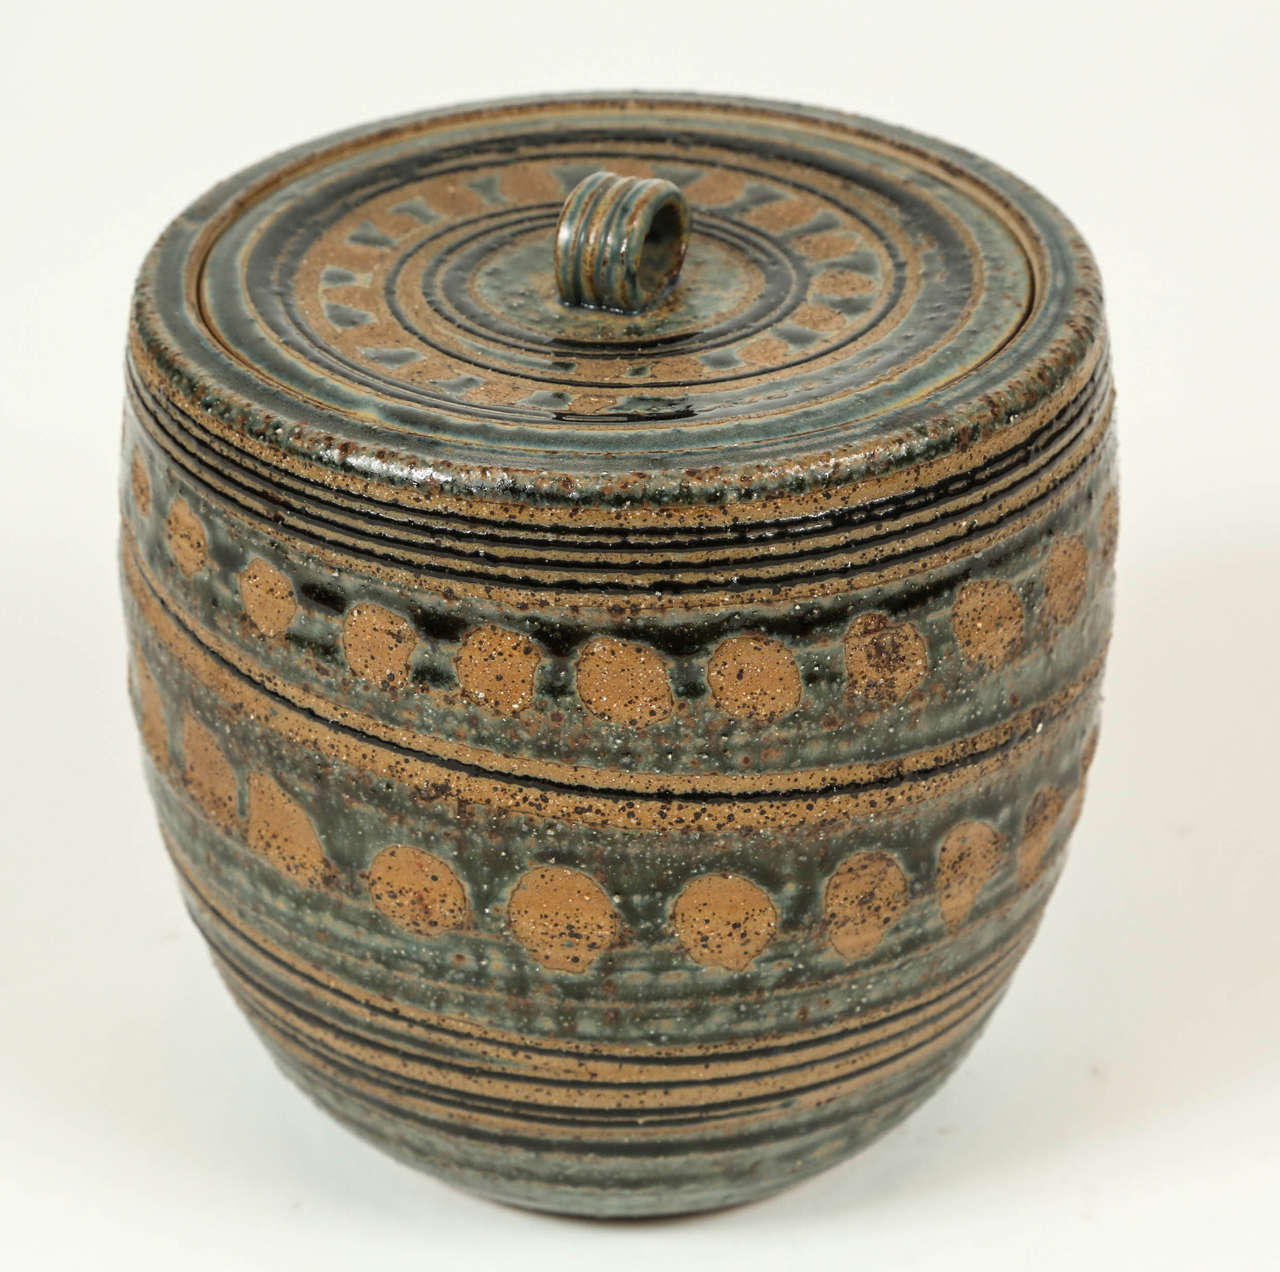 Vintage lidded pottery jar with geometric pattern and gloss blue glaze with matte underglaze.